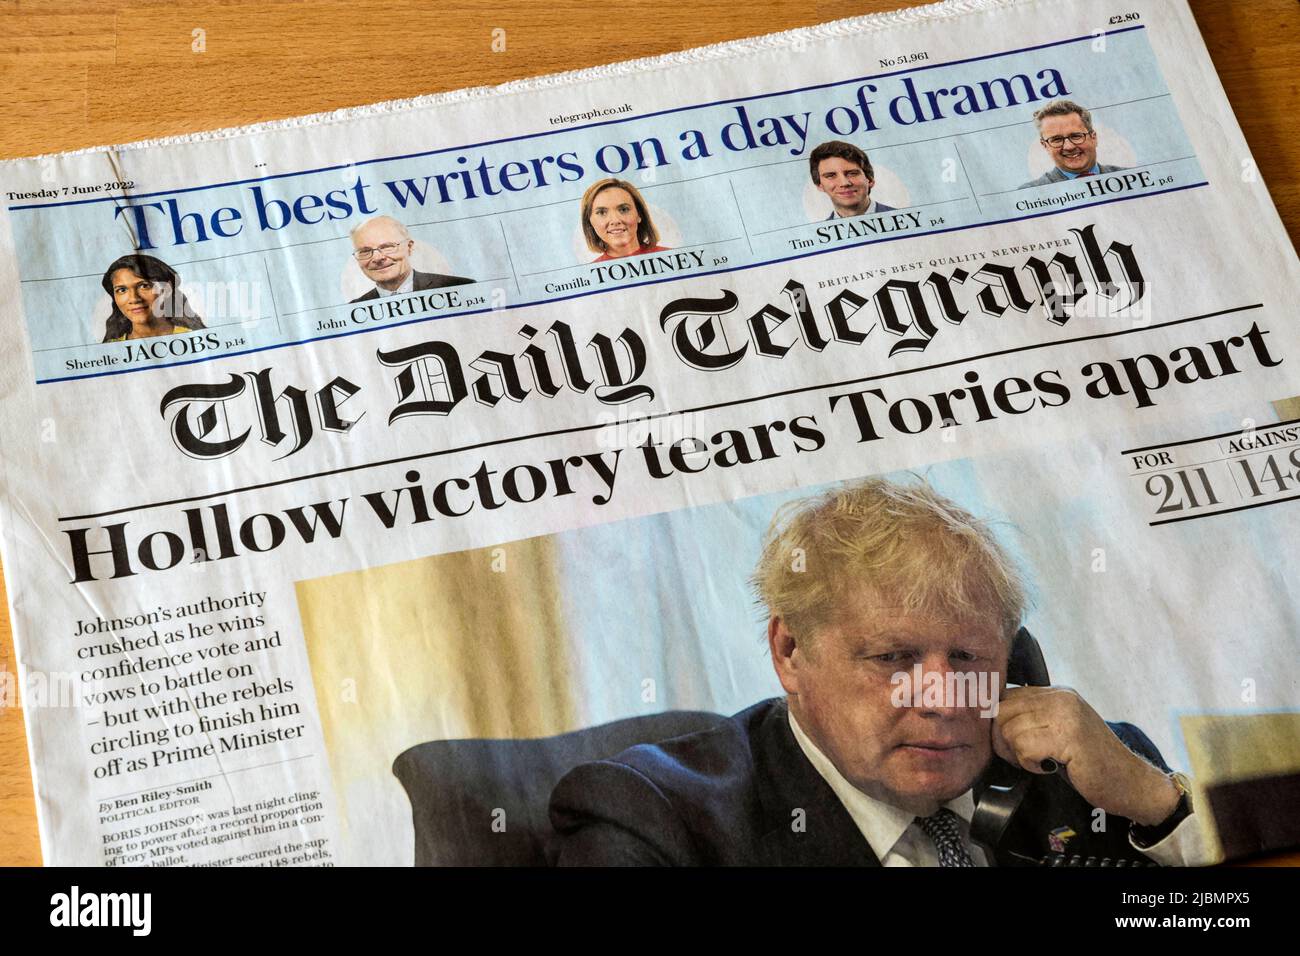 7 de junio de 2022. El titular del periódico Daily Telegraph dice que la victoria de Hollow rompe los Tories aparte, después de que Boris Johnson sobreviva a un voto de no confianza. Foto de stock